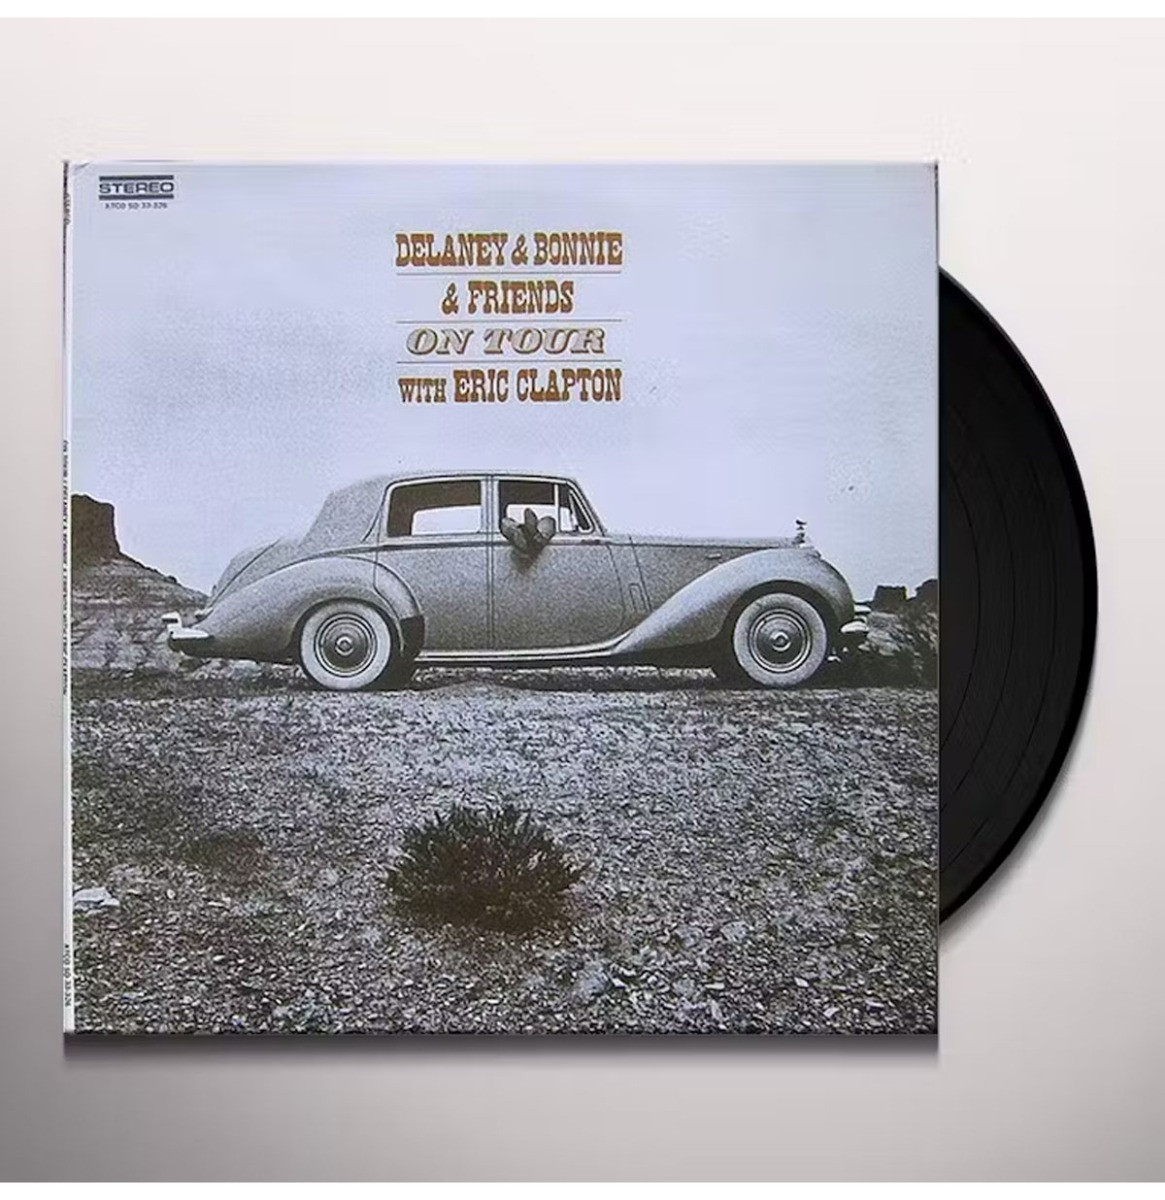 Delaney & Bonnie & Friends With Eric Clapton - On Tour LP